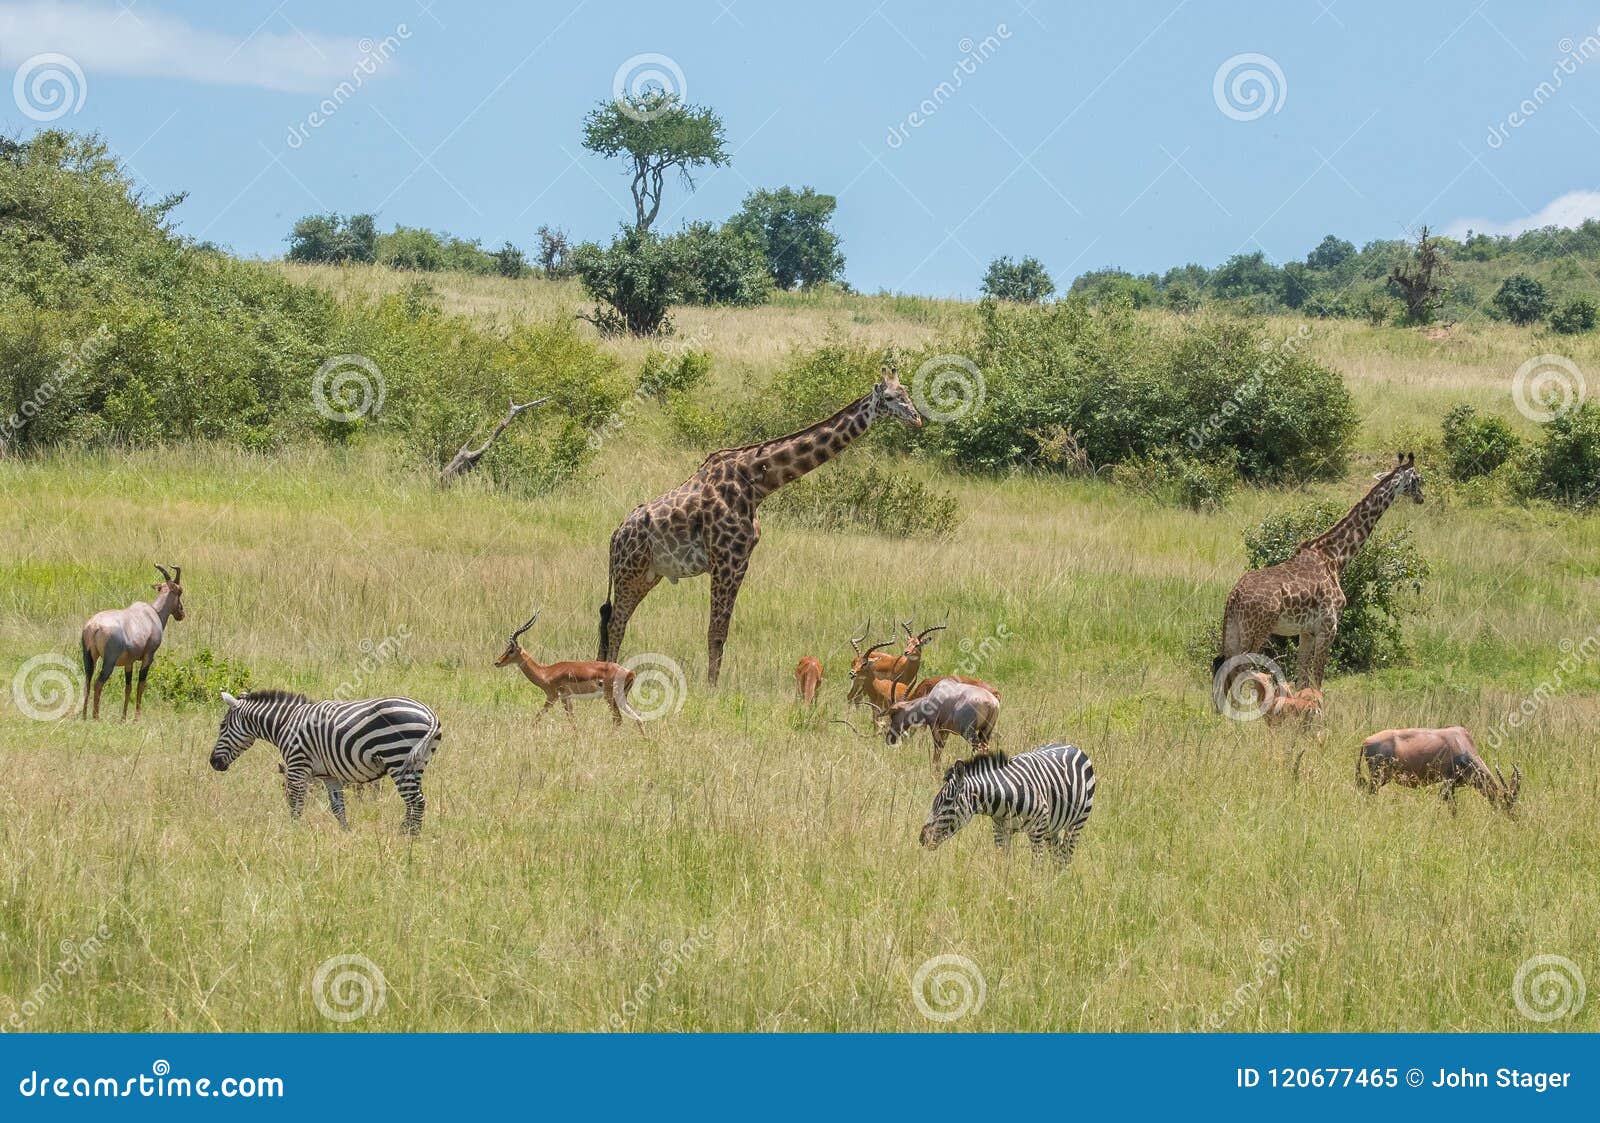 herbivores grazing in africa